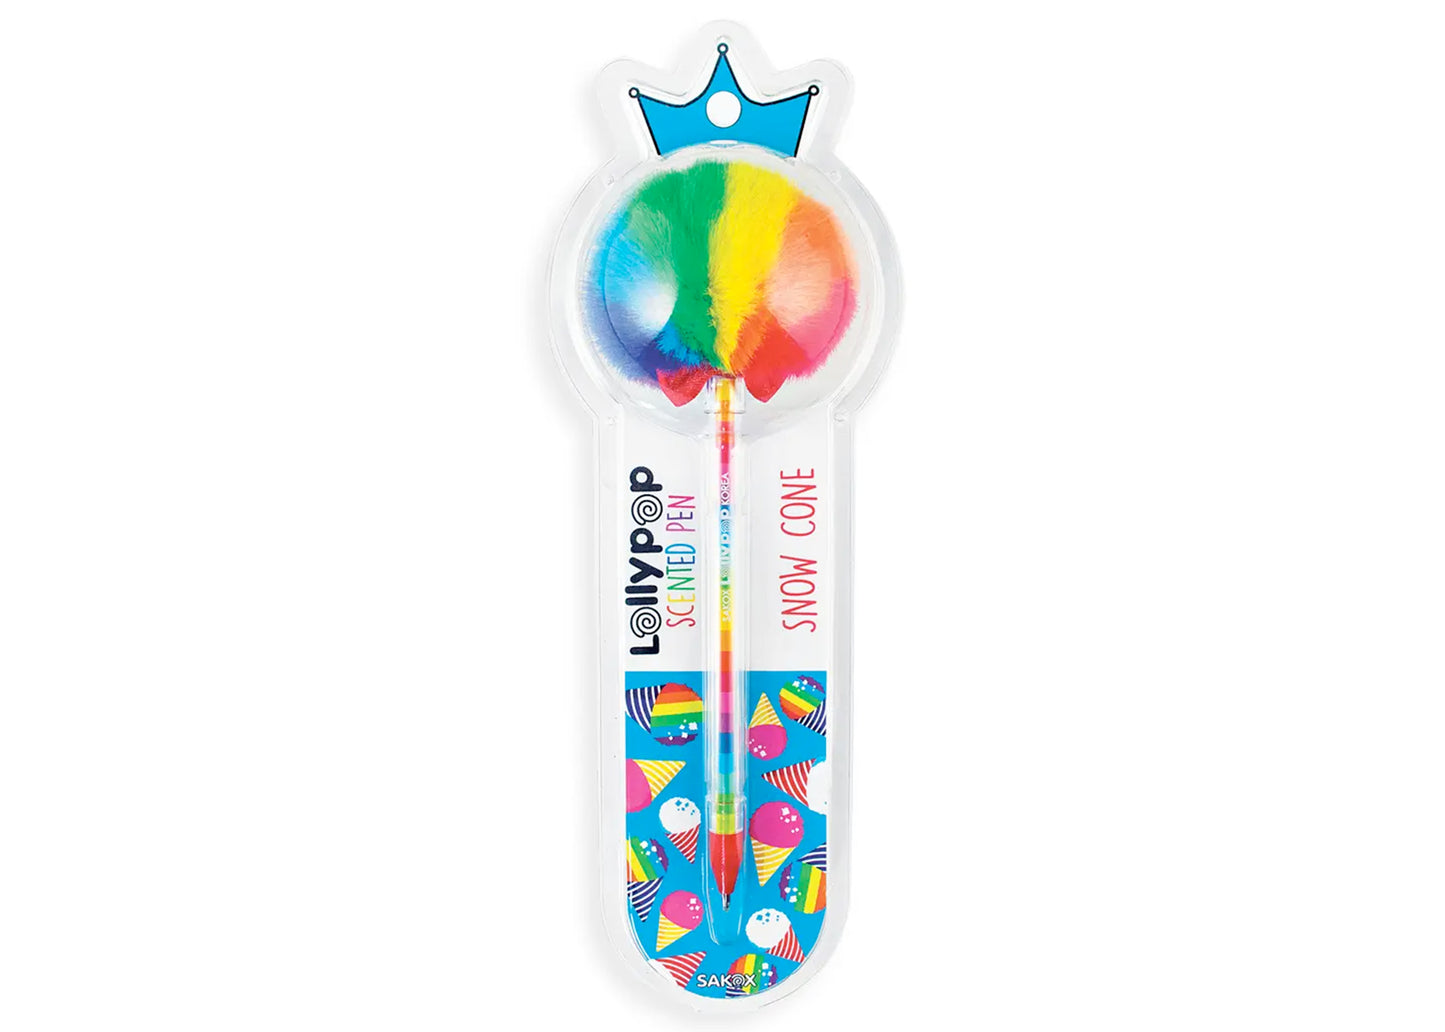 Sakox Scented Lollipop Pen in Snow Cone